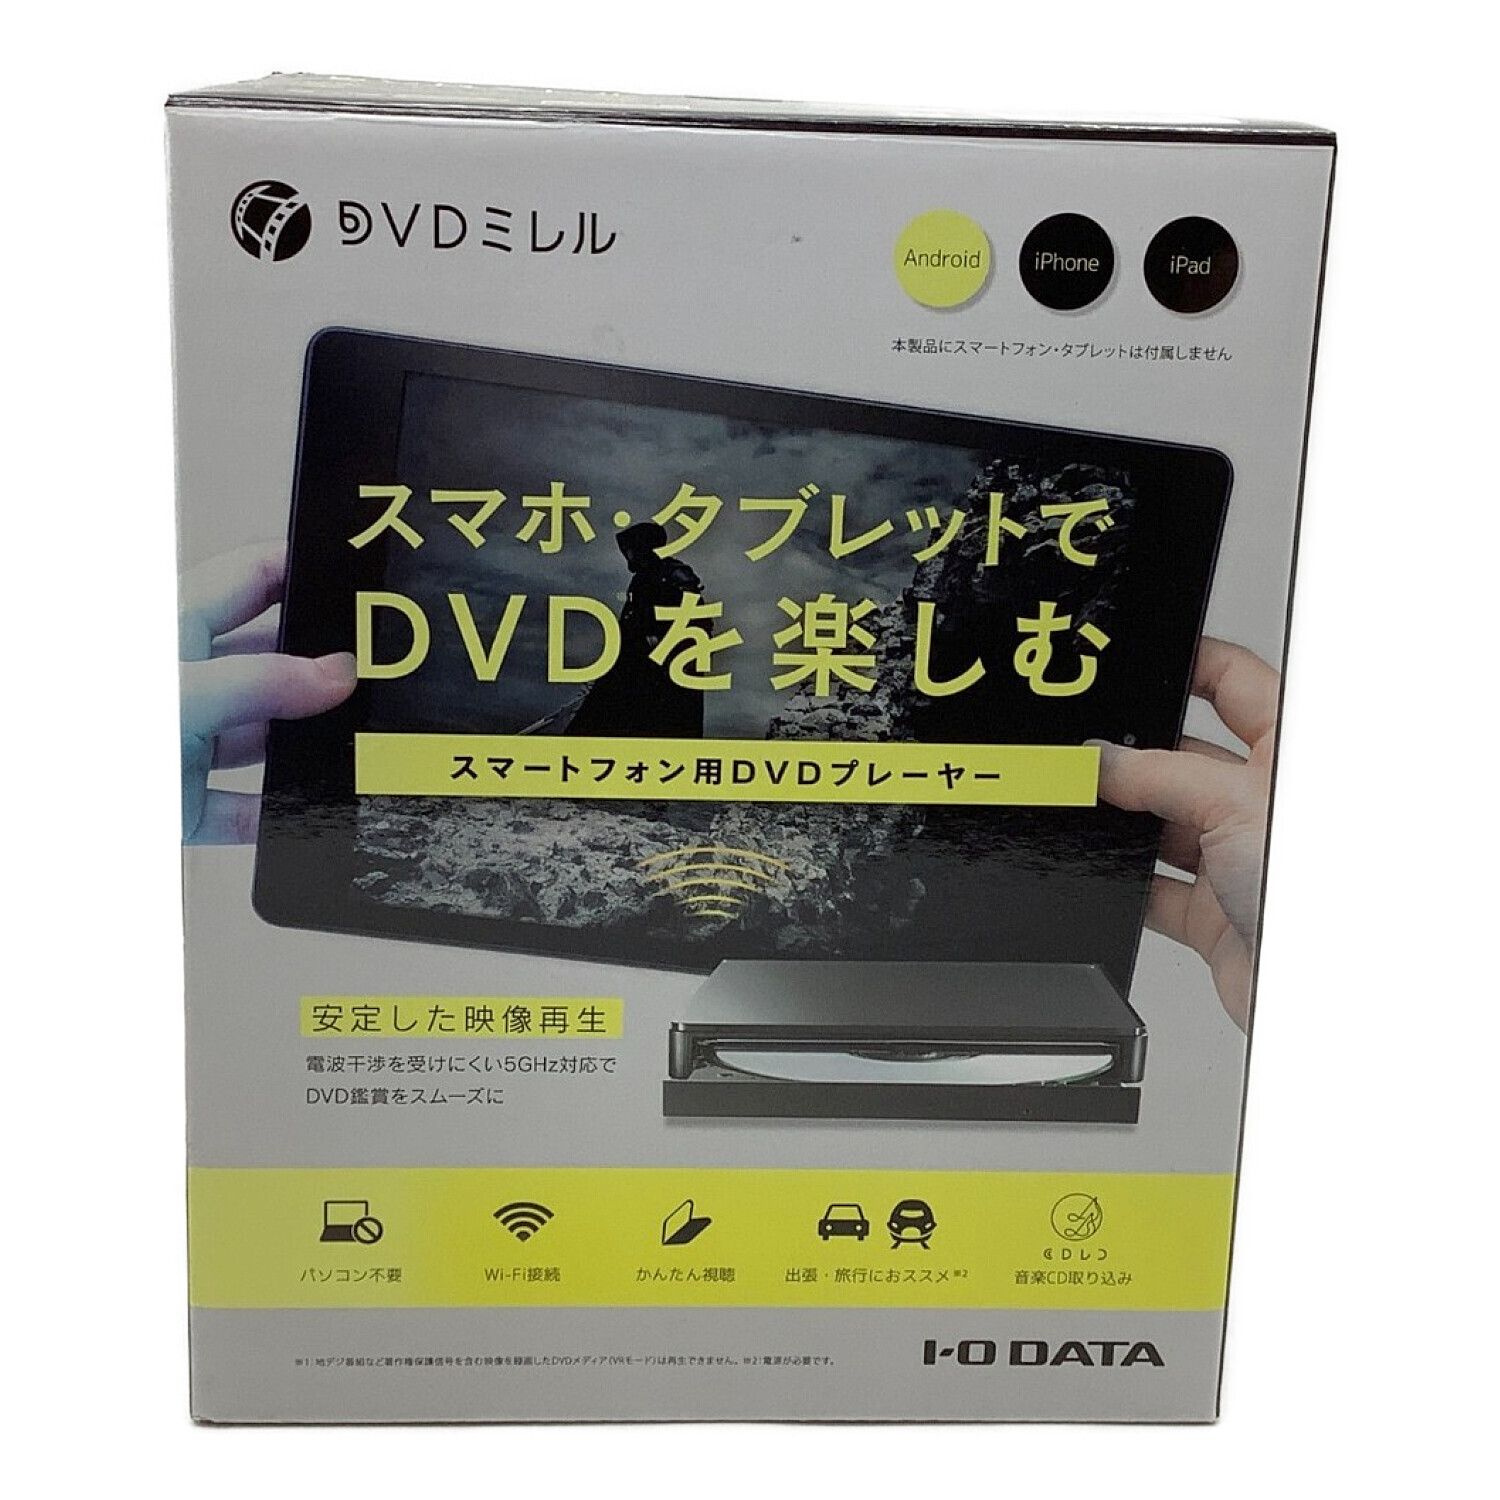 DVDミレル スマホ用DVDプレーヤー IODATA (アイオーデータ